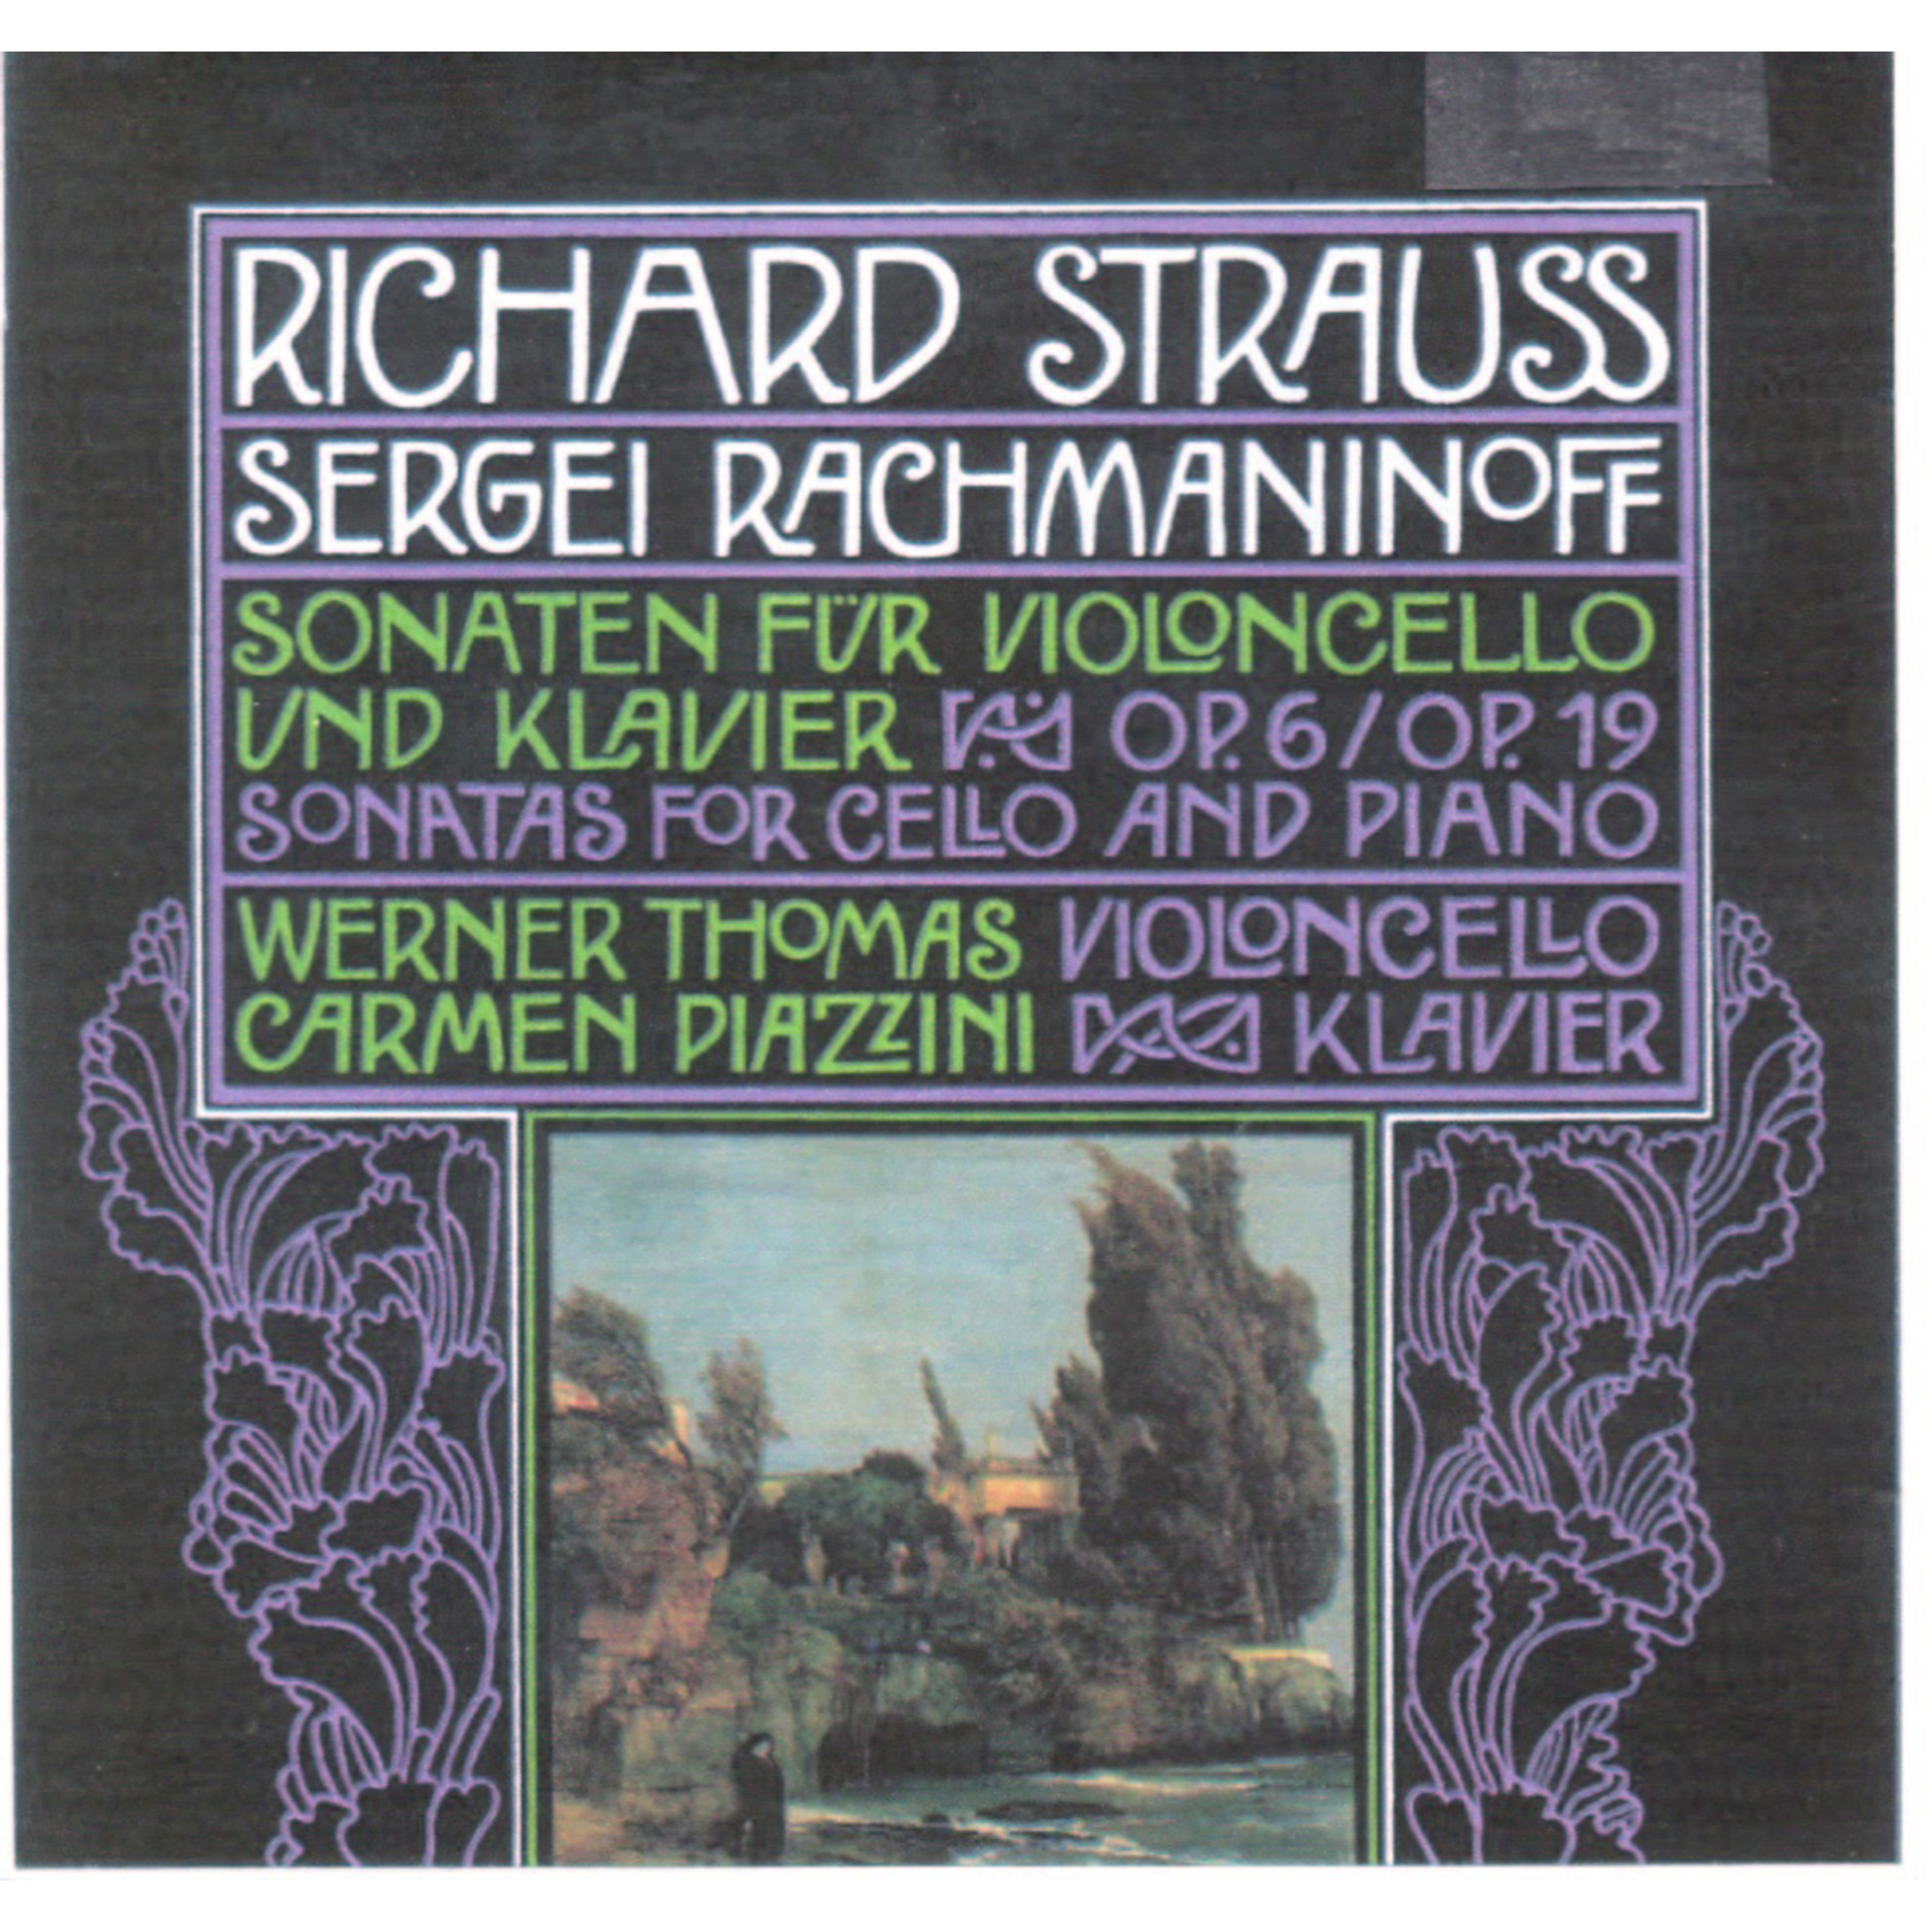 Richard Strauss, Sergei Rachmaninoff: Sonaten fü r Violoncello und Klavier